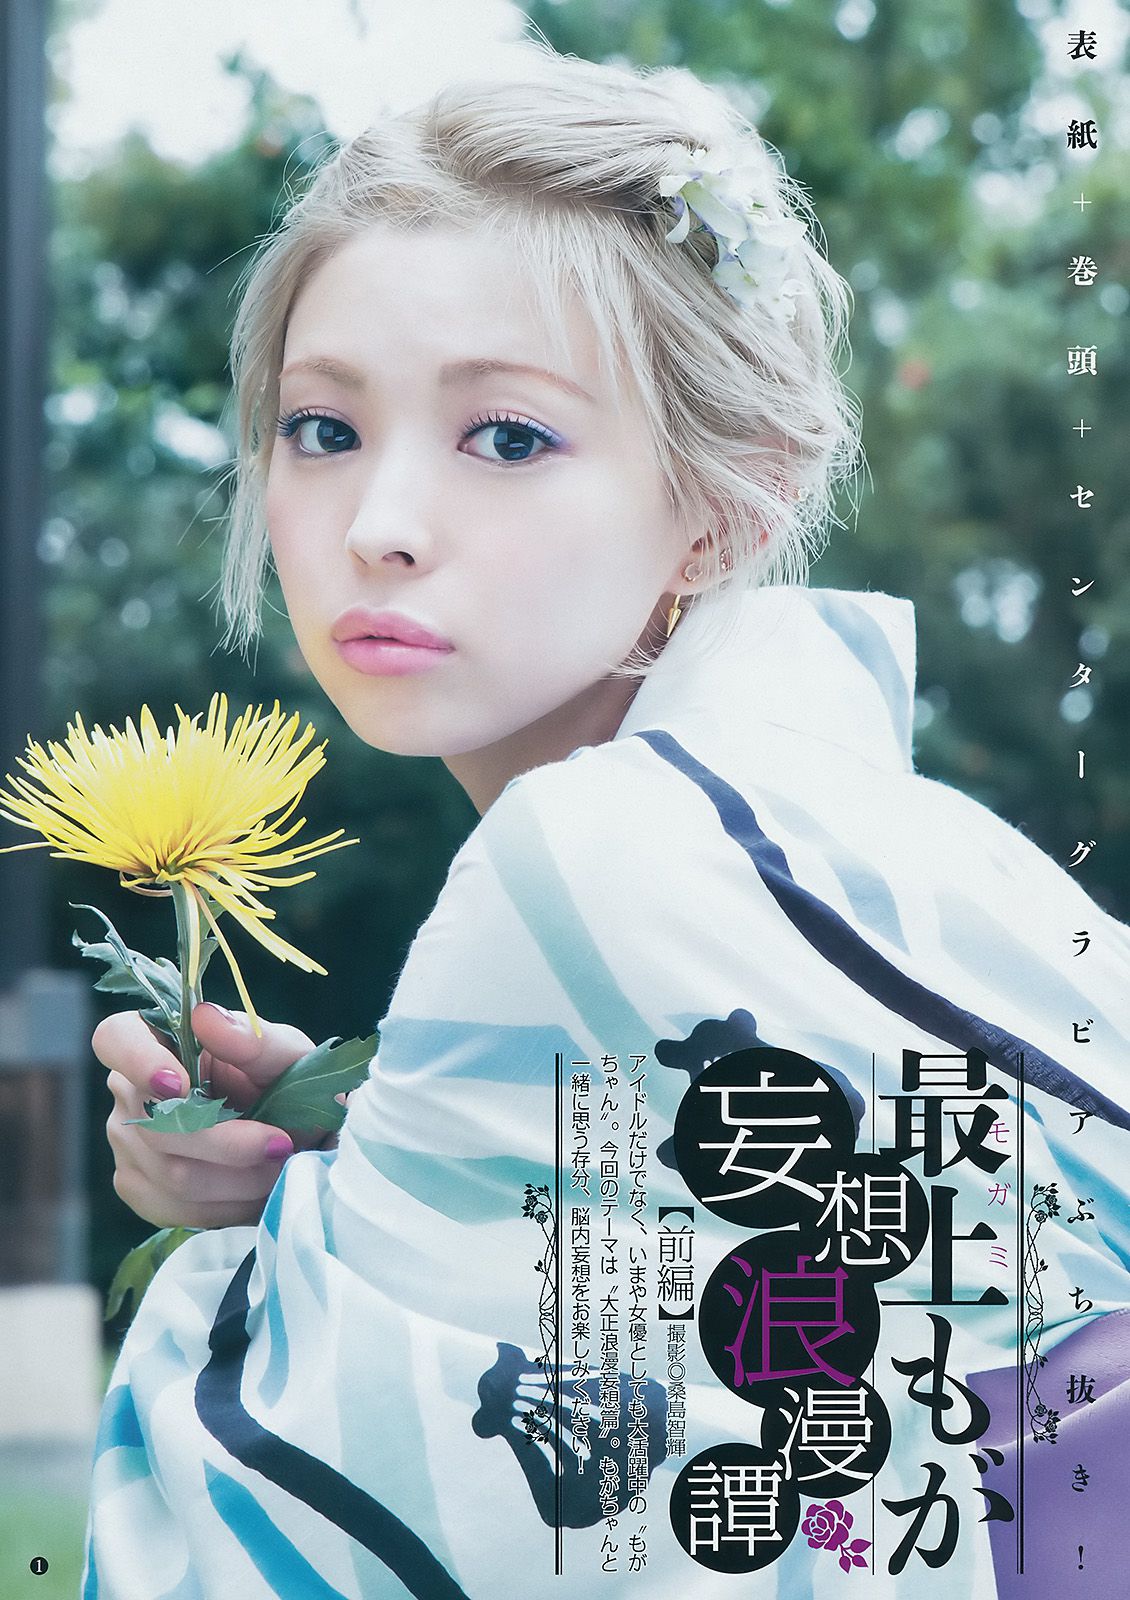 Moga Mogami is Akane Suzuki [Weekly Young Jump] 2016 No.48 Photo